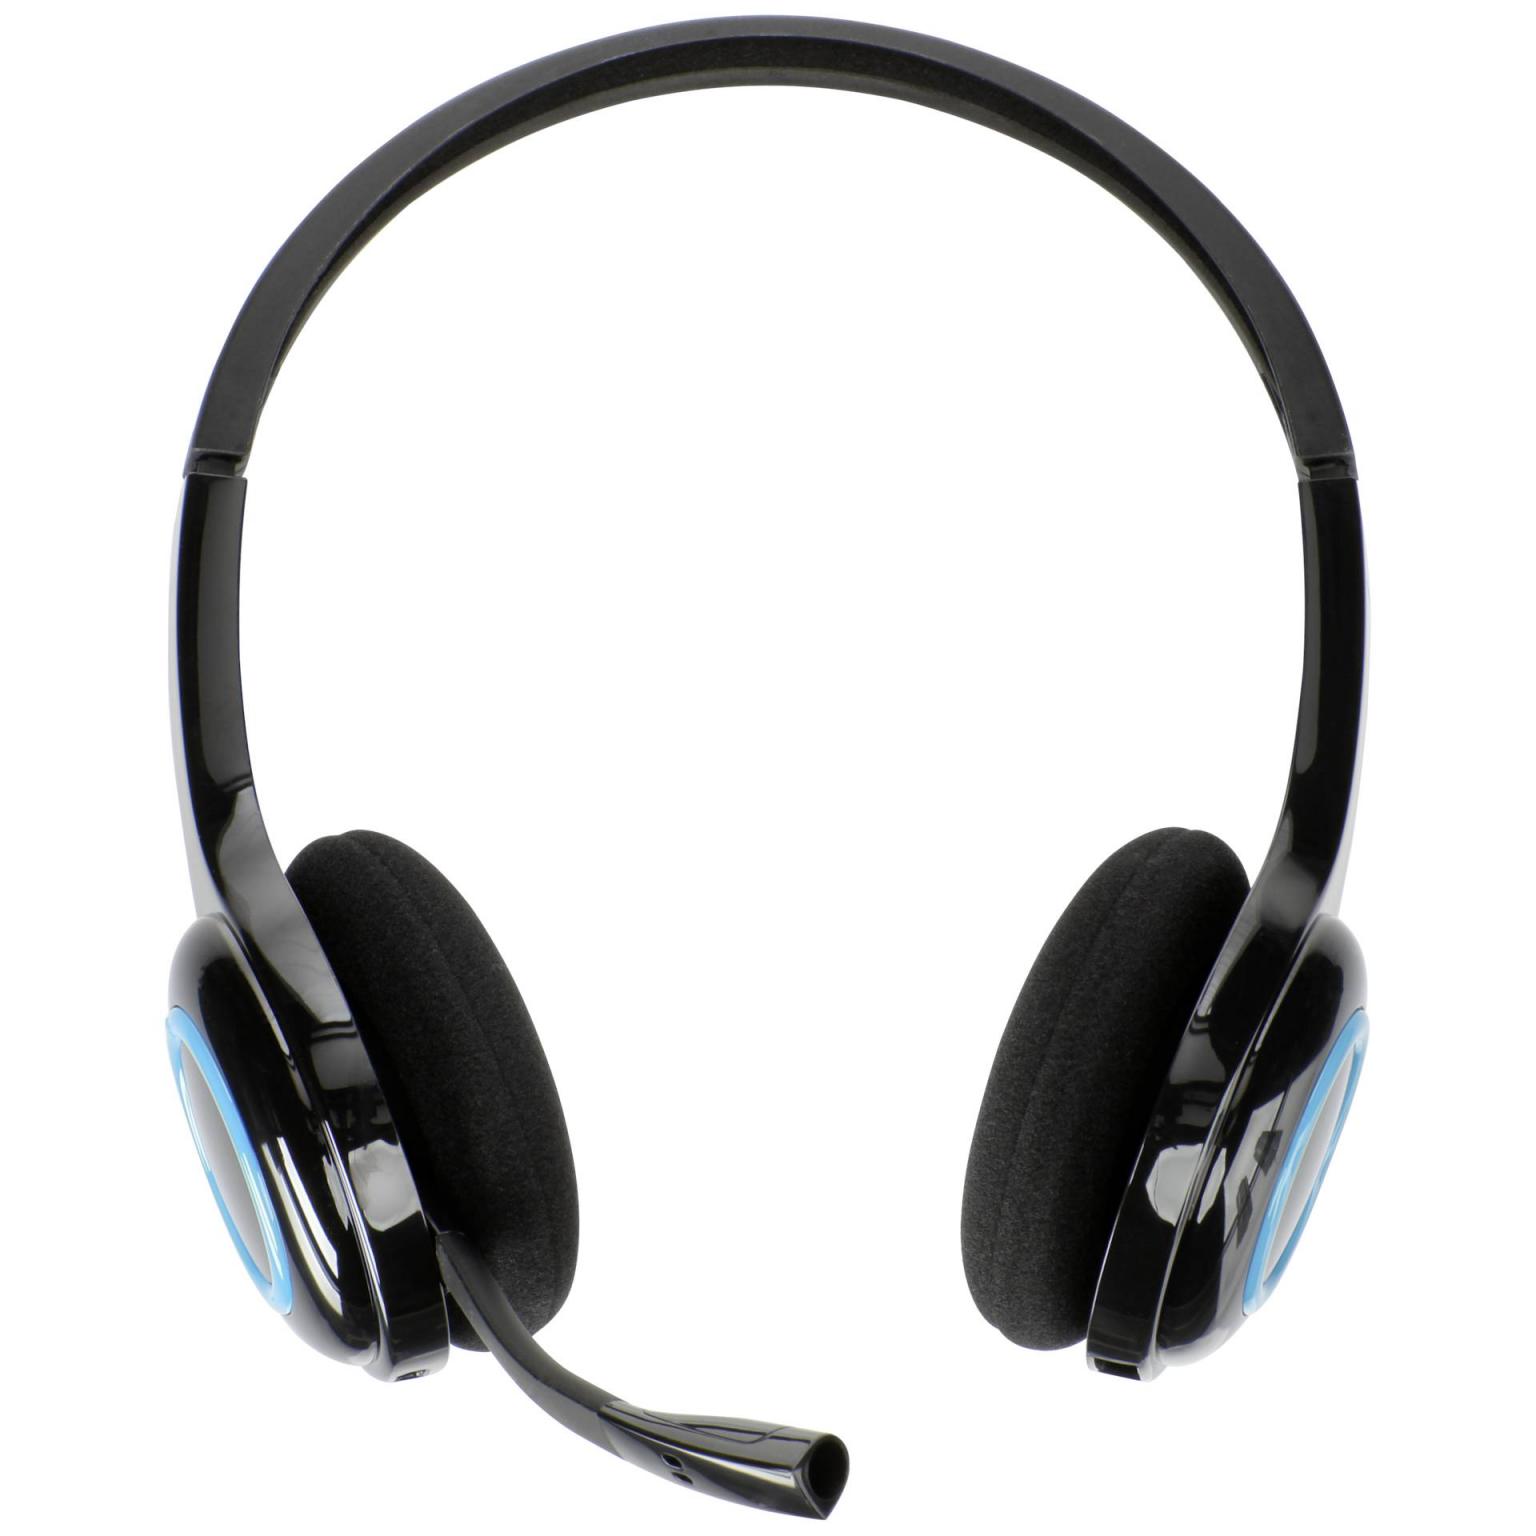 etiquette Email schrijven Mars H600 draadloos headset zwart / blauw - Merk: Logitech - H600, Aansluiting:  USB, Frequentiebereik: 40 Hz – 10 kHz, Extra: Oplaadbare accu.